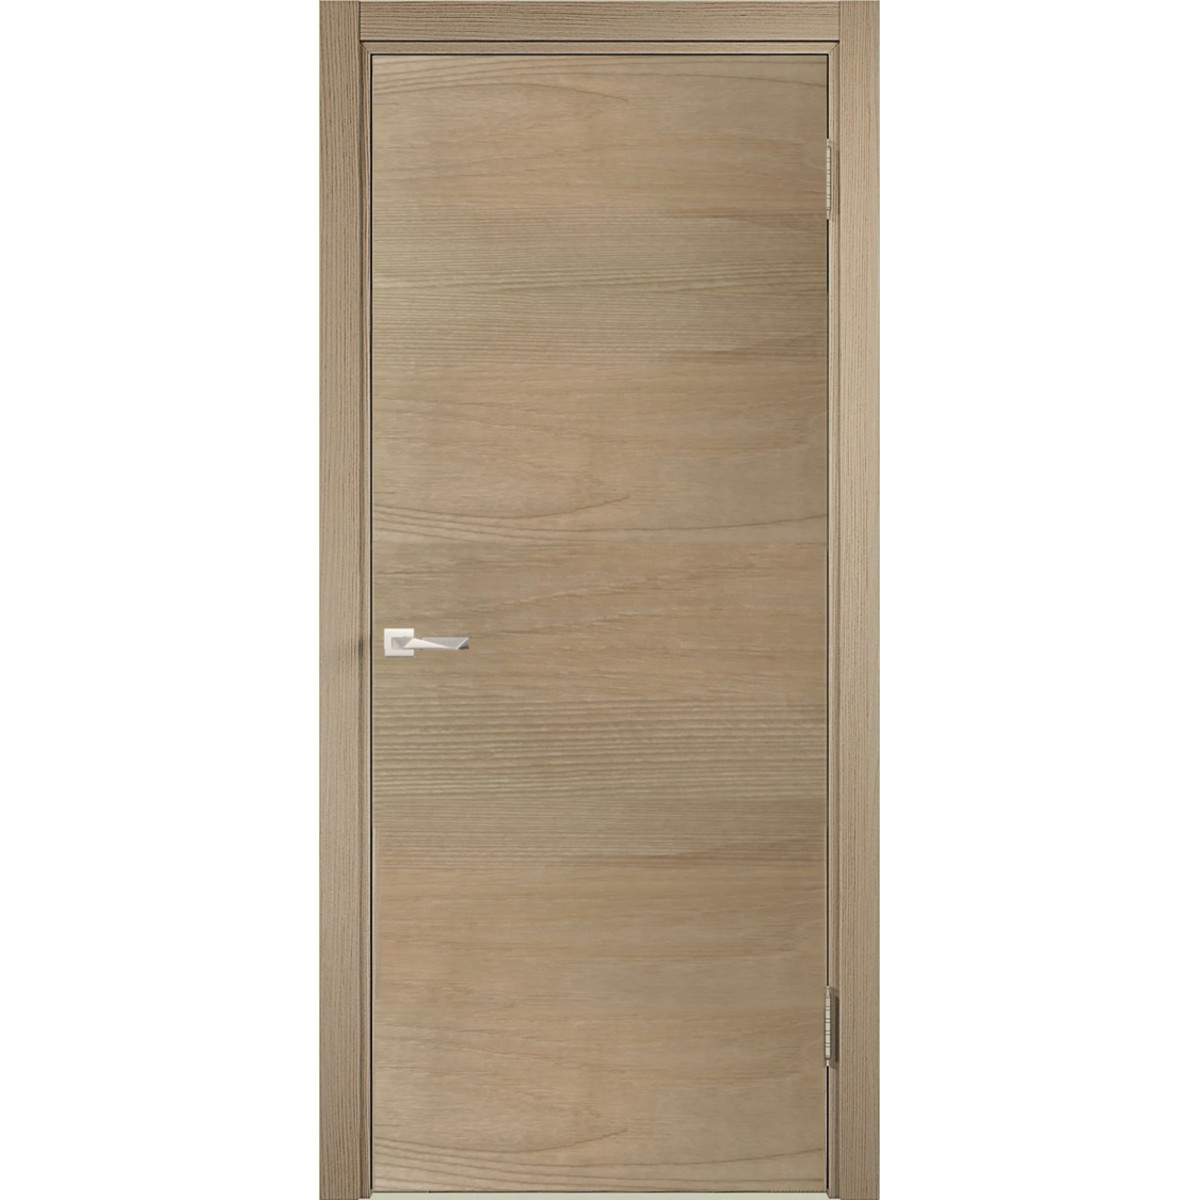 Дверь межкомнатная глухая c замком в комплекте 90x200 см ламинация, цвет ясень коричневый